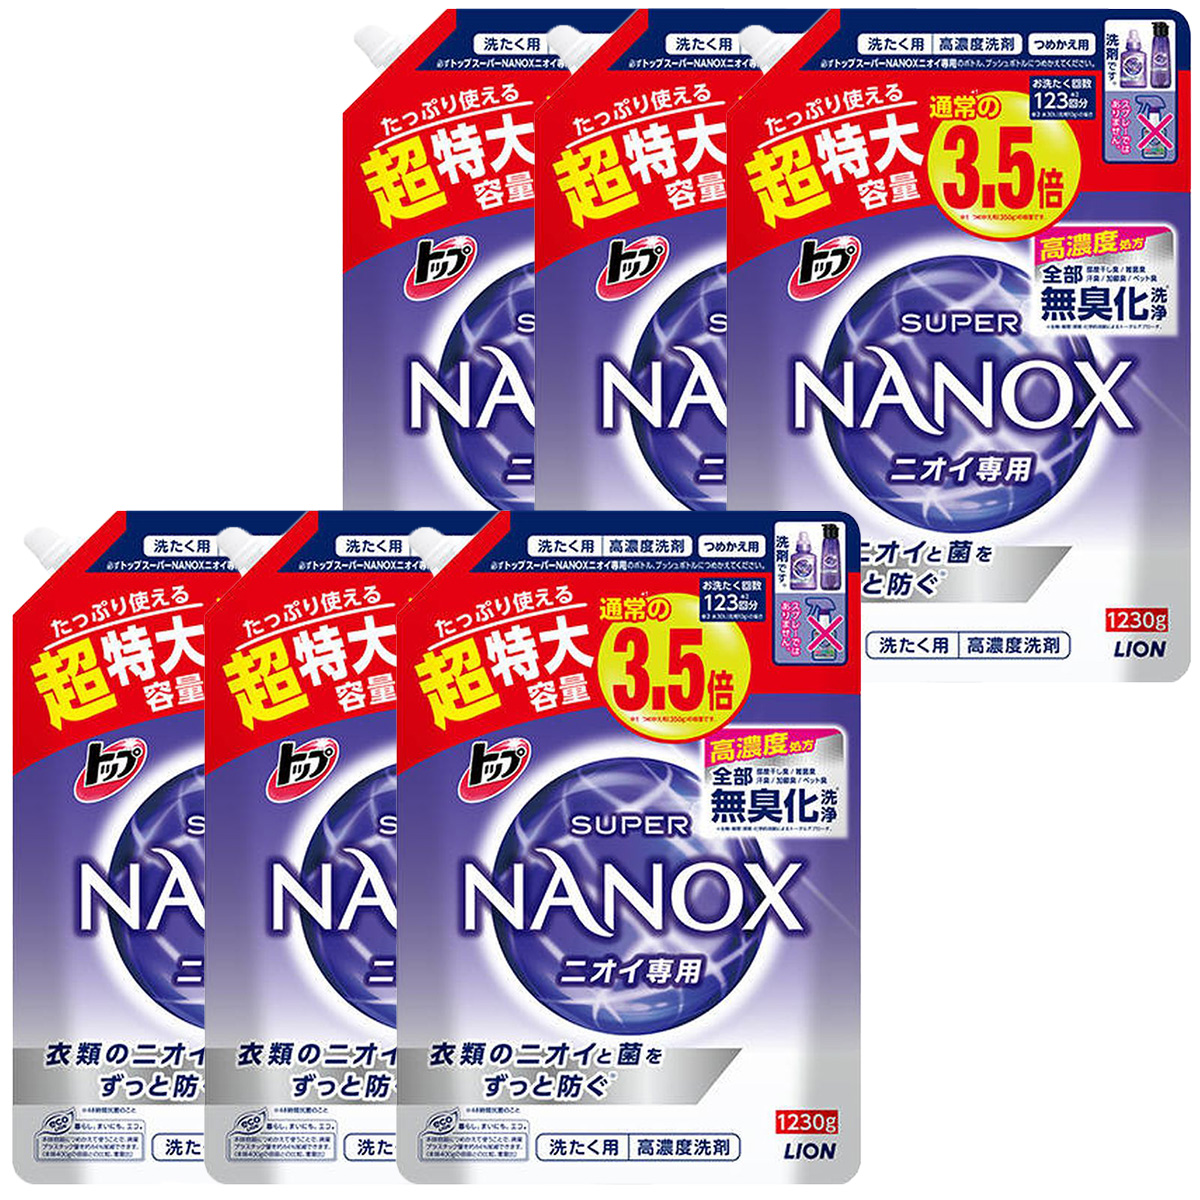 0円 激安な トップ スーパーナノックス 高濃度 1230g 16袋セット NANOX